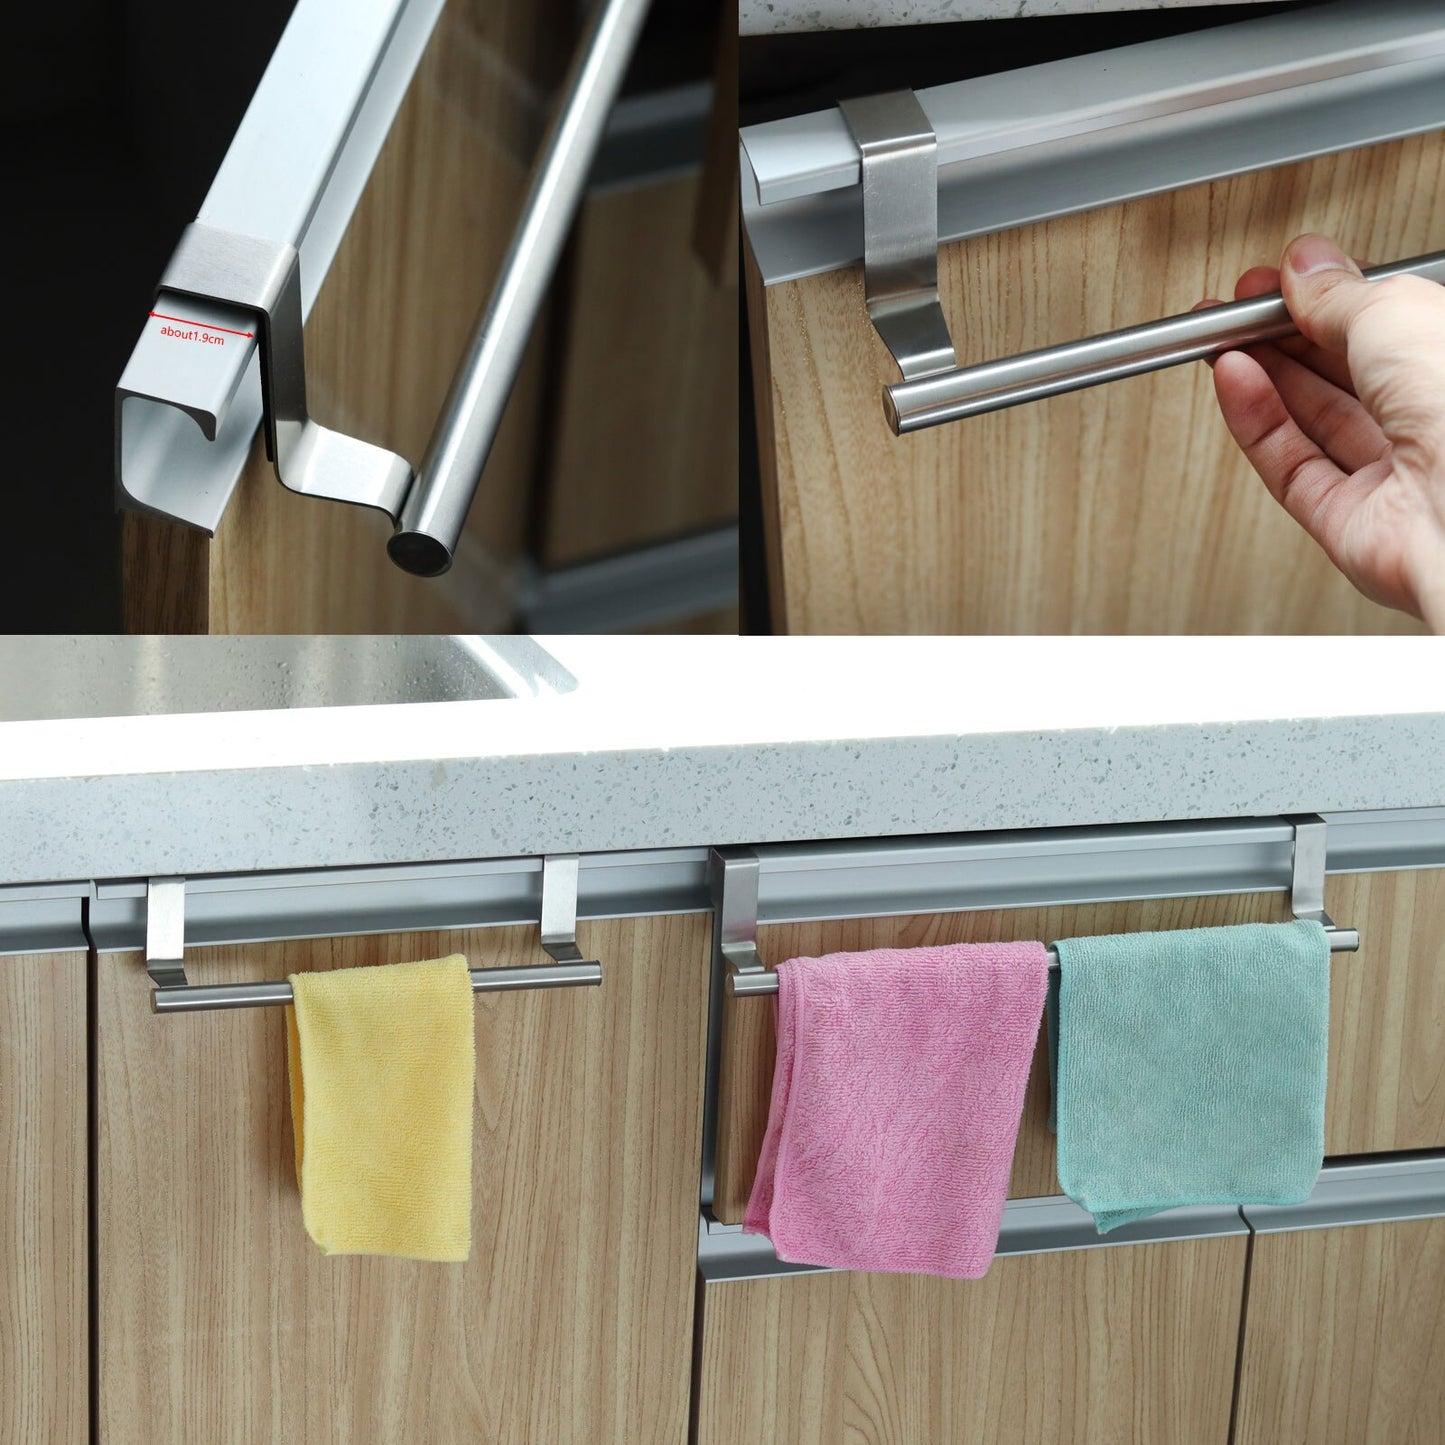 Towel Rack Over Door Towel Bar Hanging Holder Stainless Steel Bathroom Kitchen Cabinet Towel Rag Rack Shelf Hanger Accessories